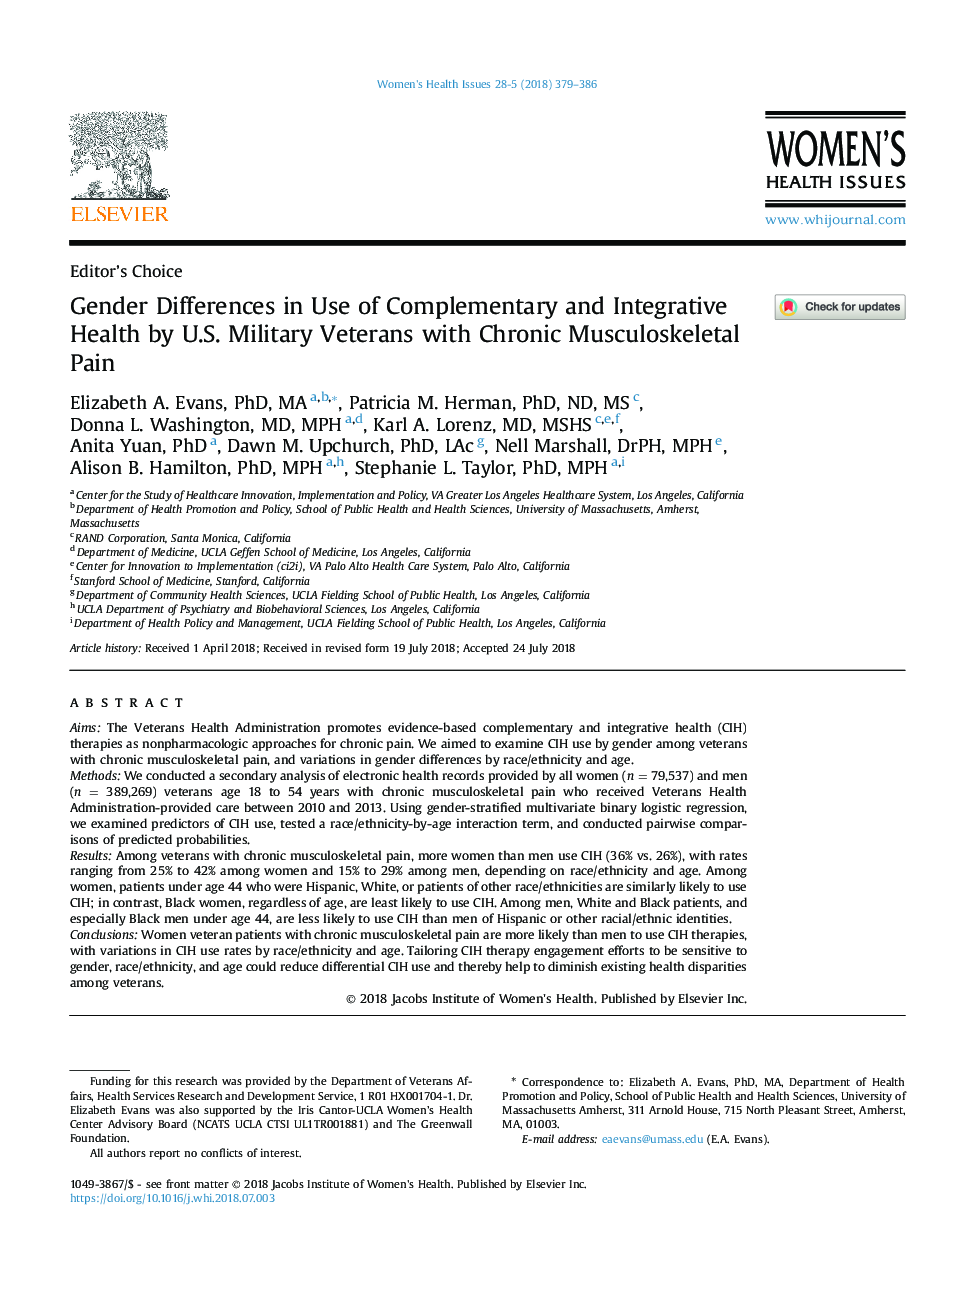 تفاوت های جنسیتی در استفاده از بهداشت مکمل و یکپارچه توسط جانبازان نظامی آمریکایی با درد مزمن اسکلتی عضلانی